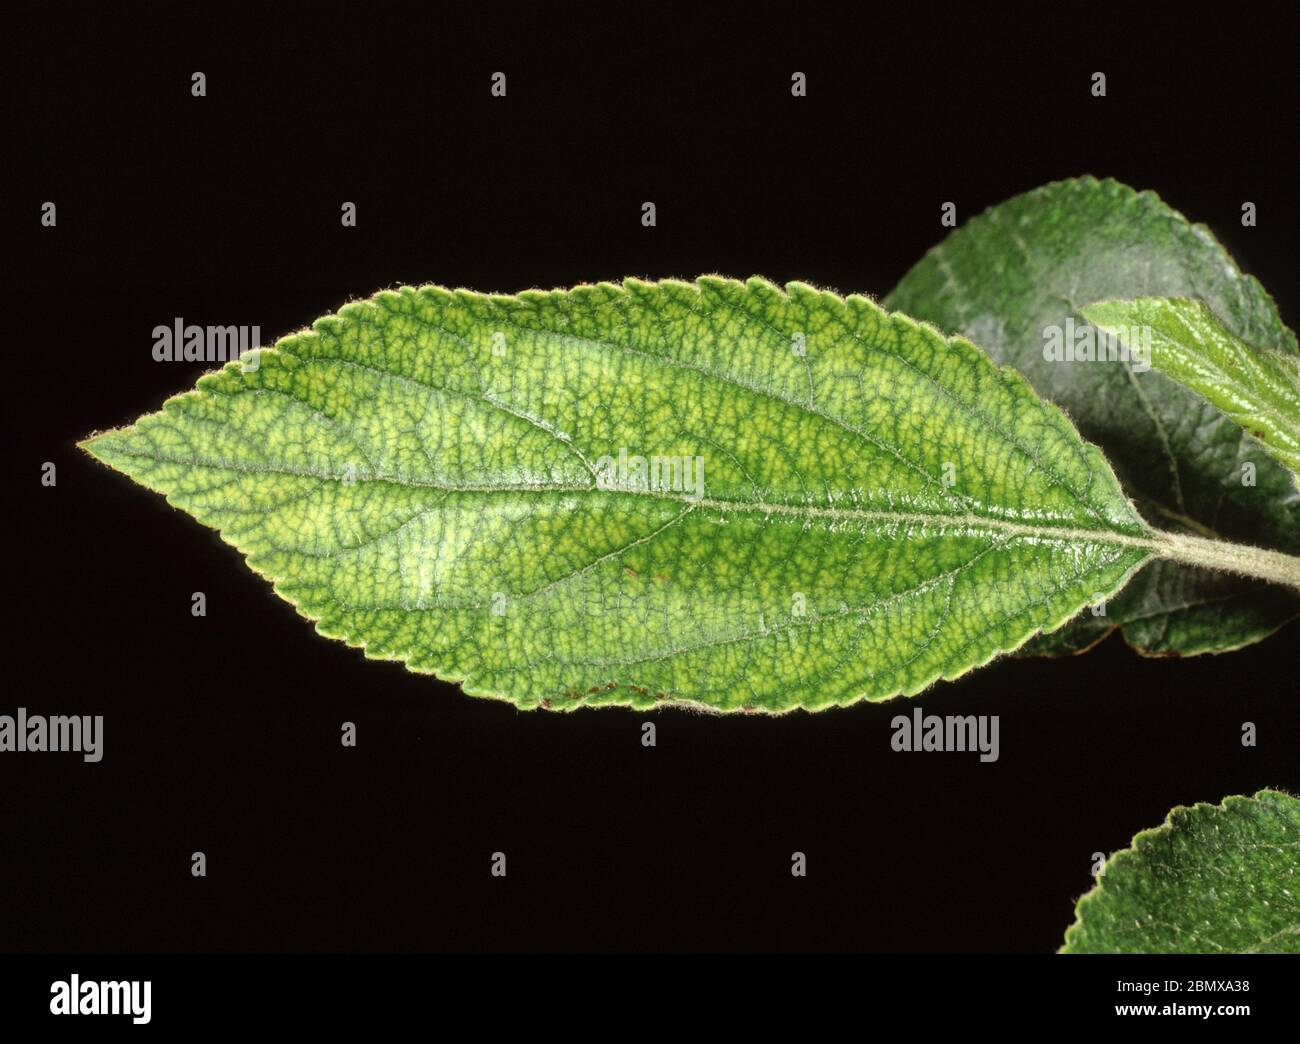 Interveinale Chlorose ein Symptom von Manganmangel auf einem Apfelblatt  Stockfotografie - Alamy